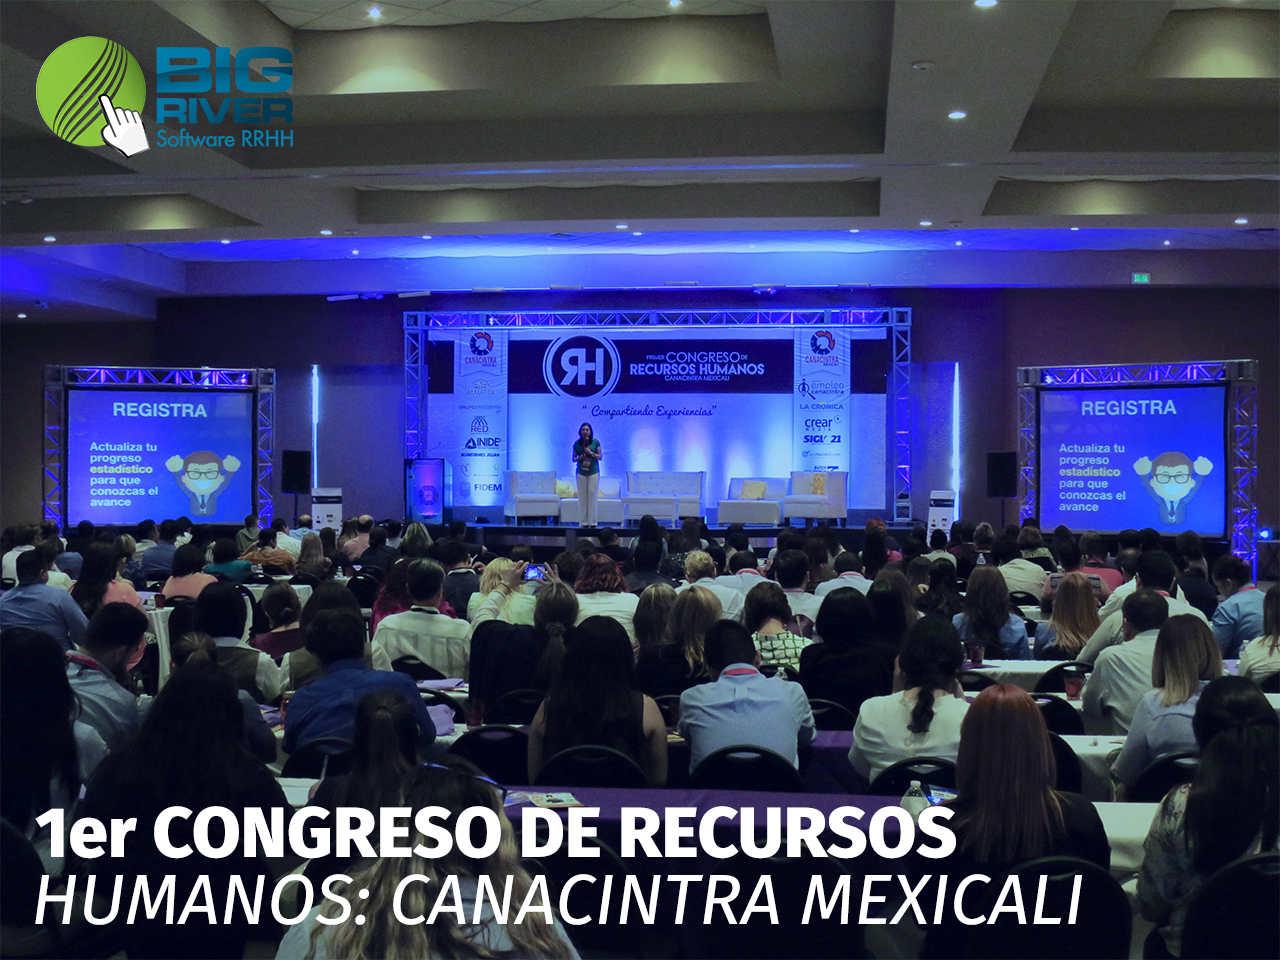 congreso de recursos canacintra mexicali